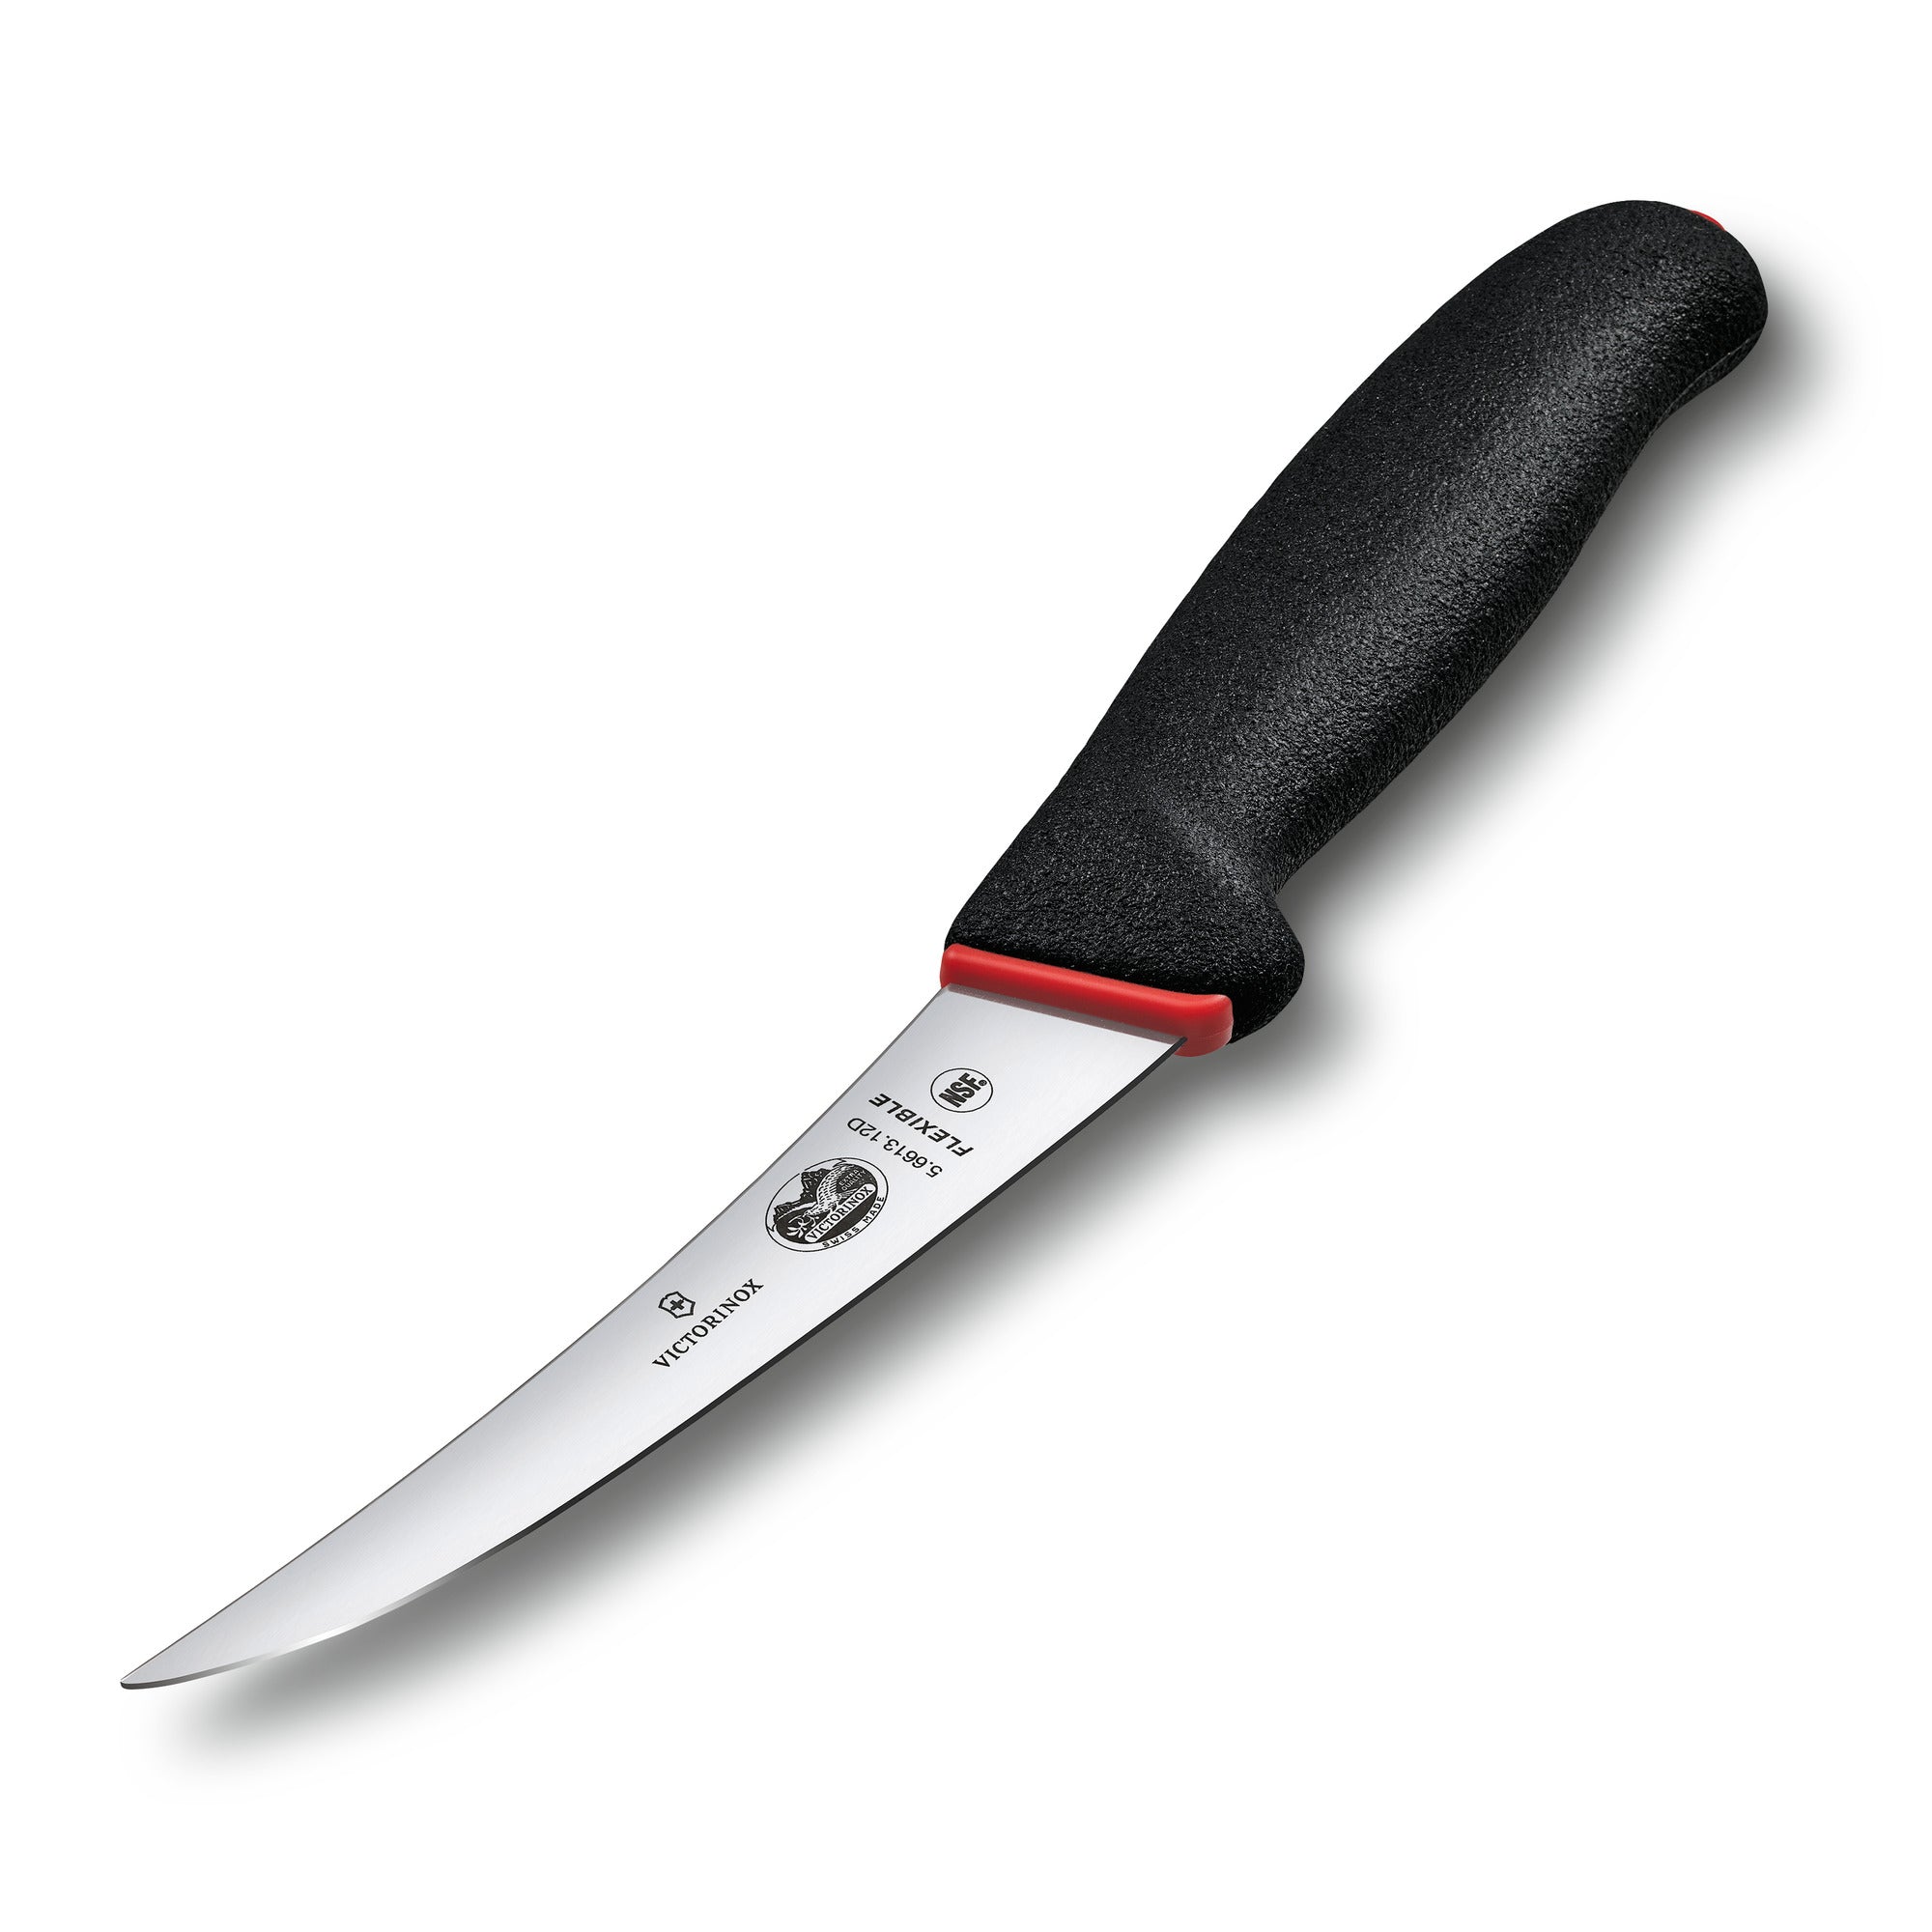 Las mejores ofertas en Cuchillos de acero inoxidable Victorinox cuchillos  deshuesar